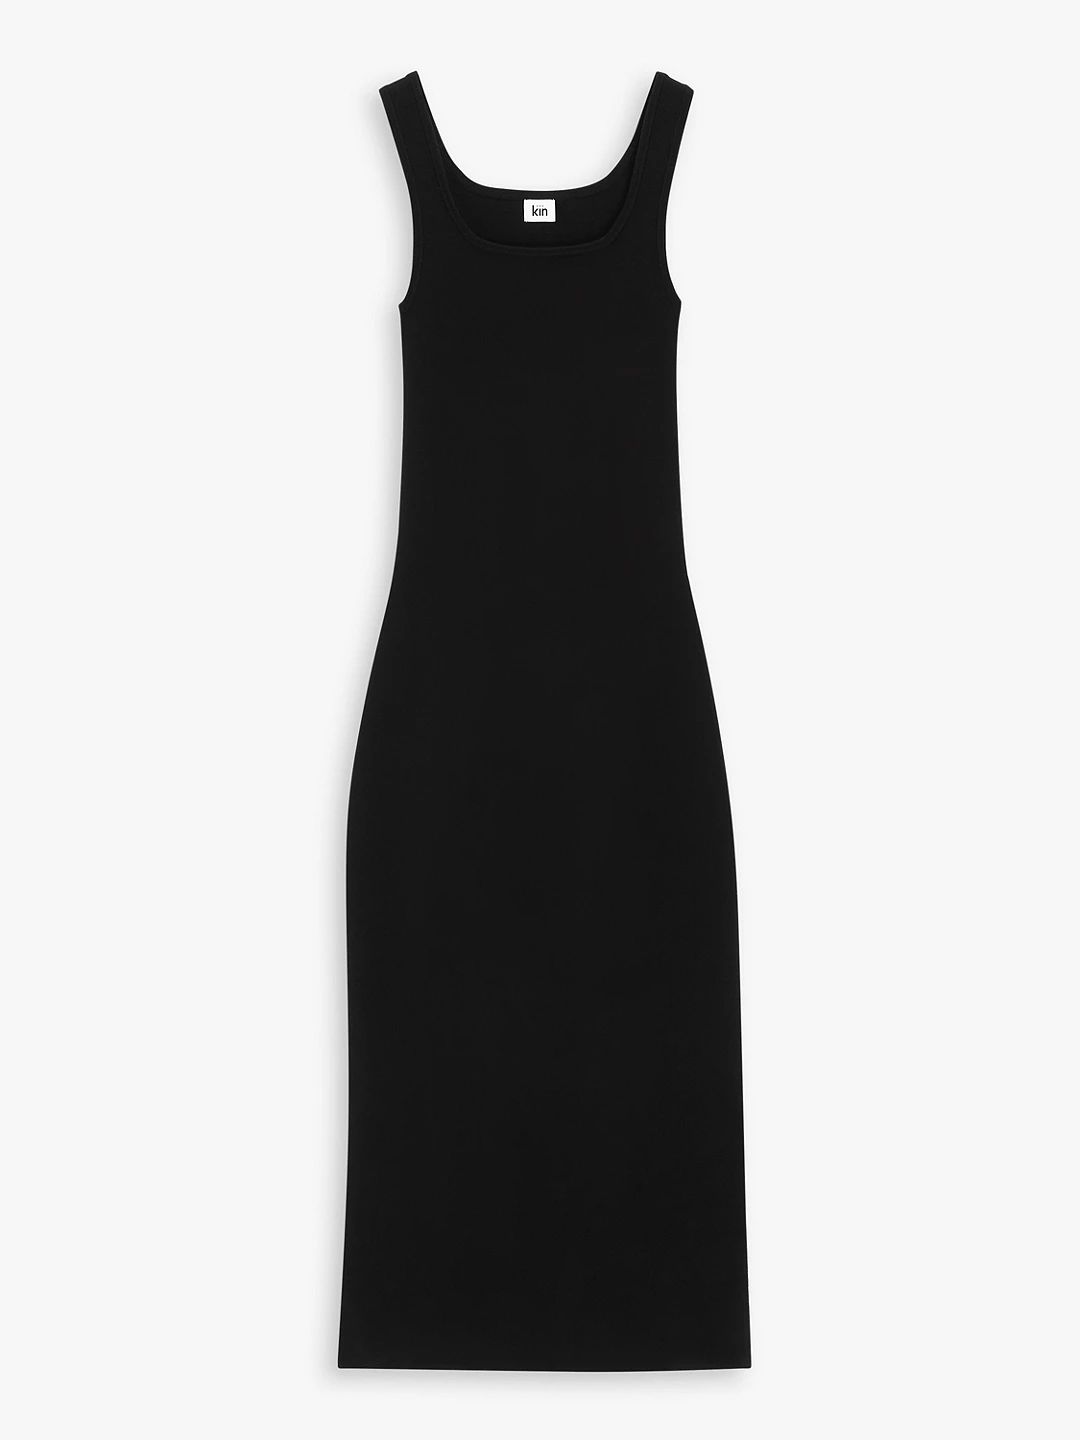 Kin Plain Slim Fit Square Neck Midi Dress, Black | John Lewis (UK)